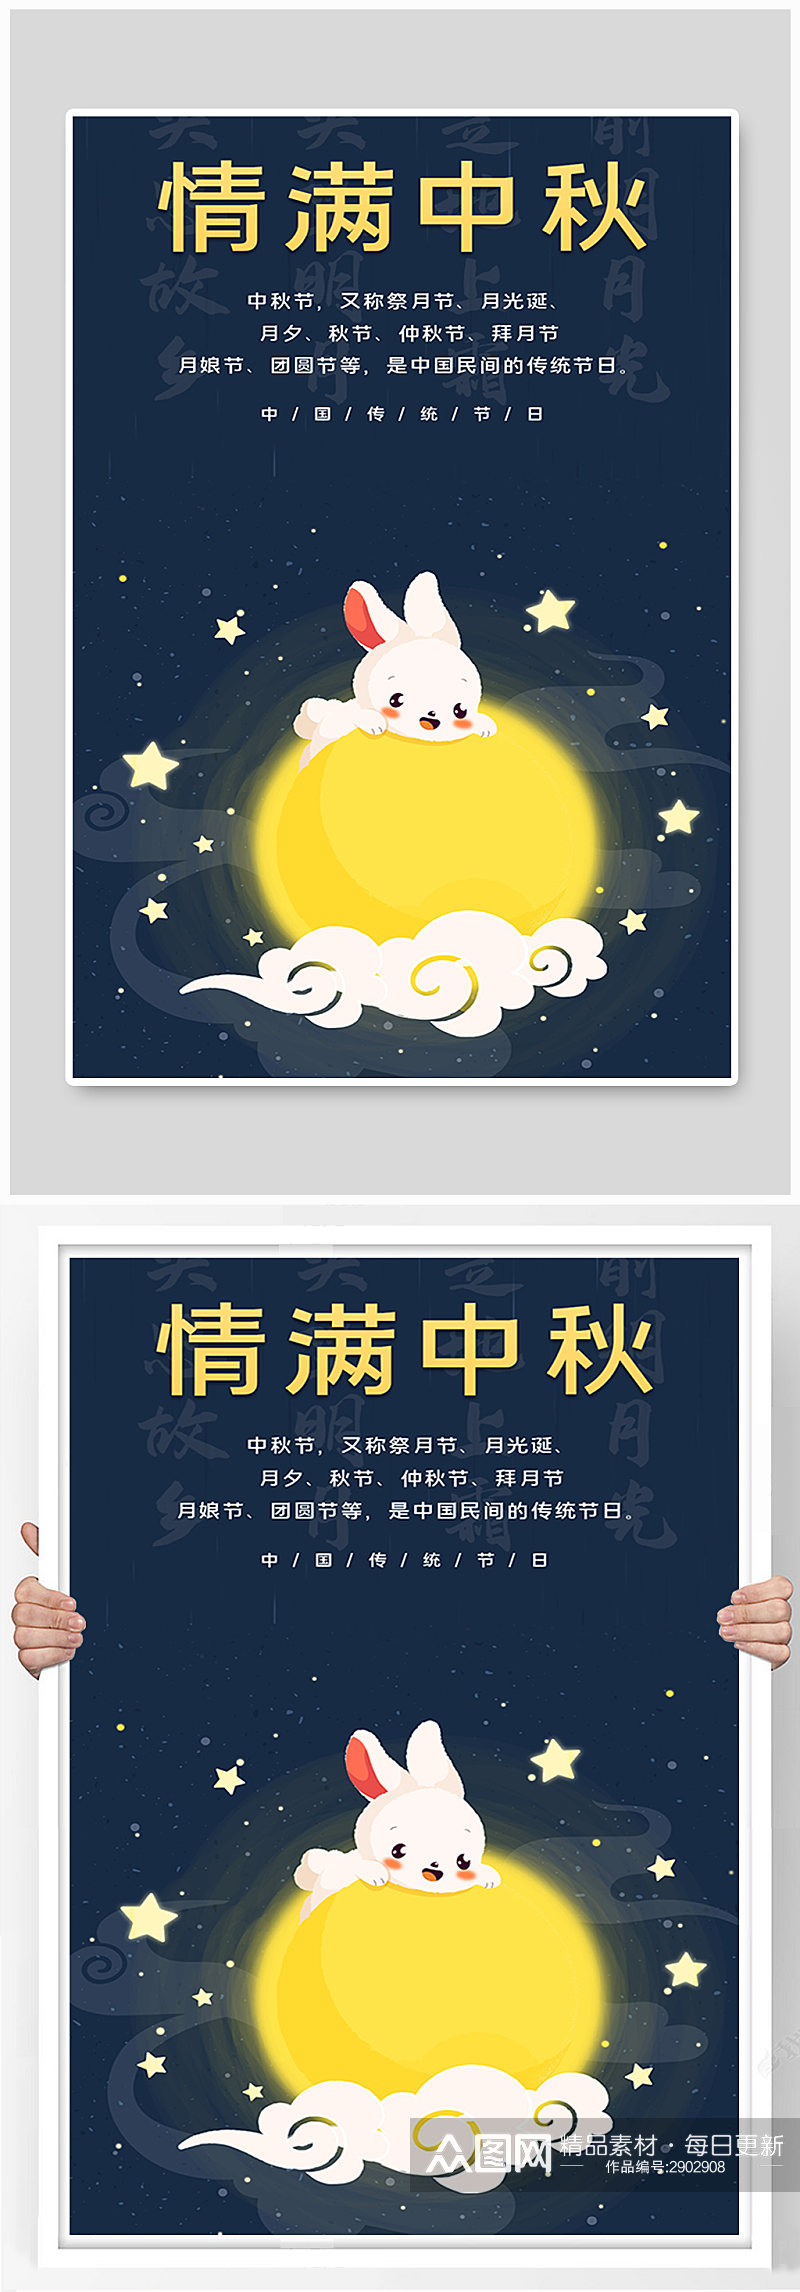 节日传统节日情满中秋月饼月亮团圆海报素材